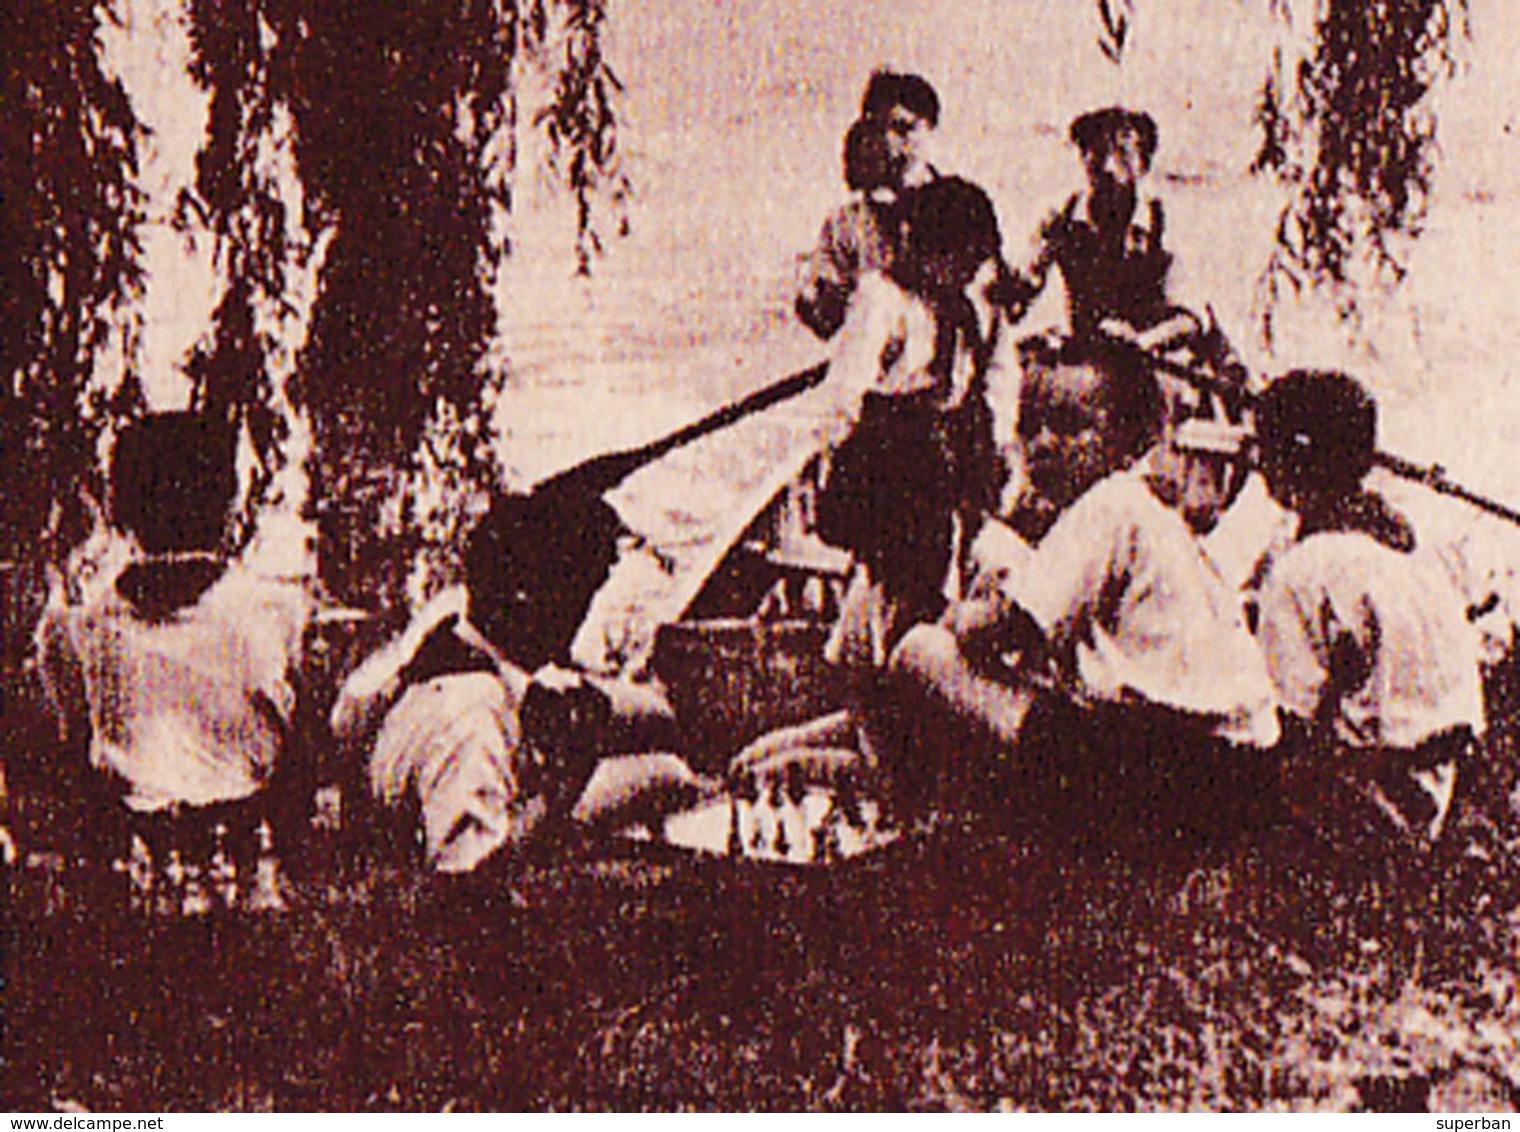 ÉCHECS / CHESS : ENFANTS JOUANT AUX ÉCHECS En ROUMANIE / CHILDREN PLAYING CHESS In ROMANIA ~ 1950 - '52 - RRR ! (ab778) - Scacchi